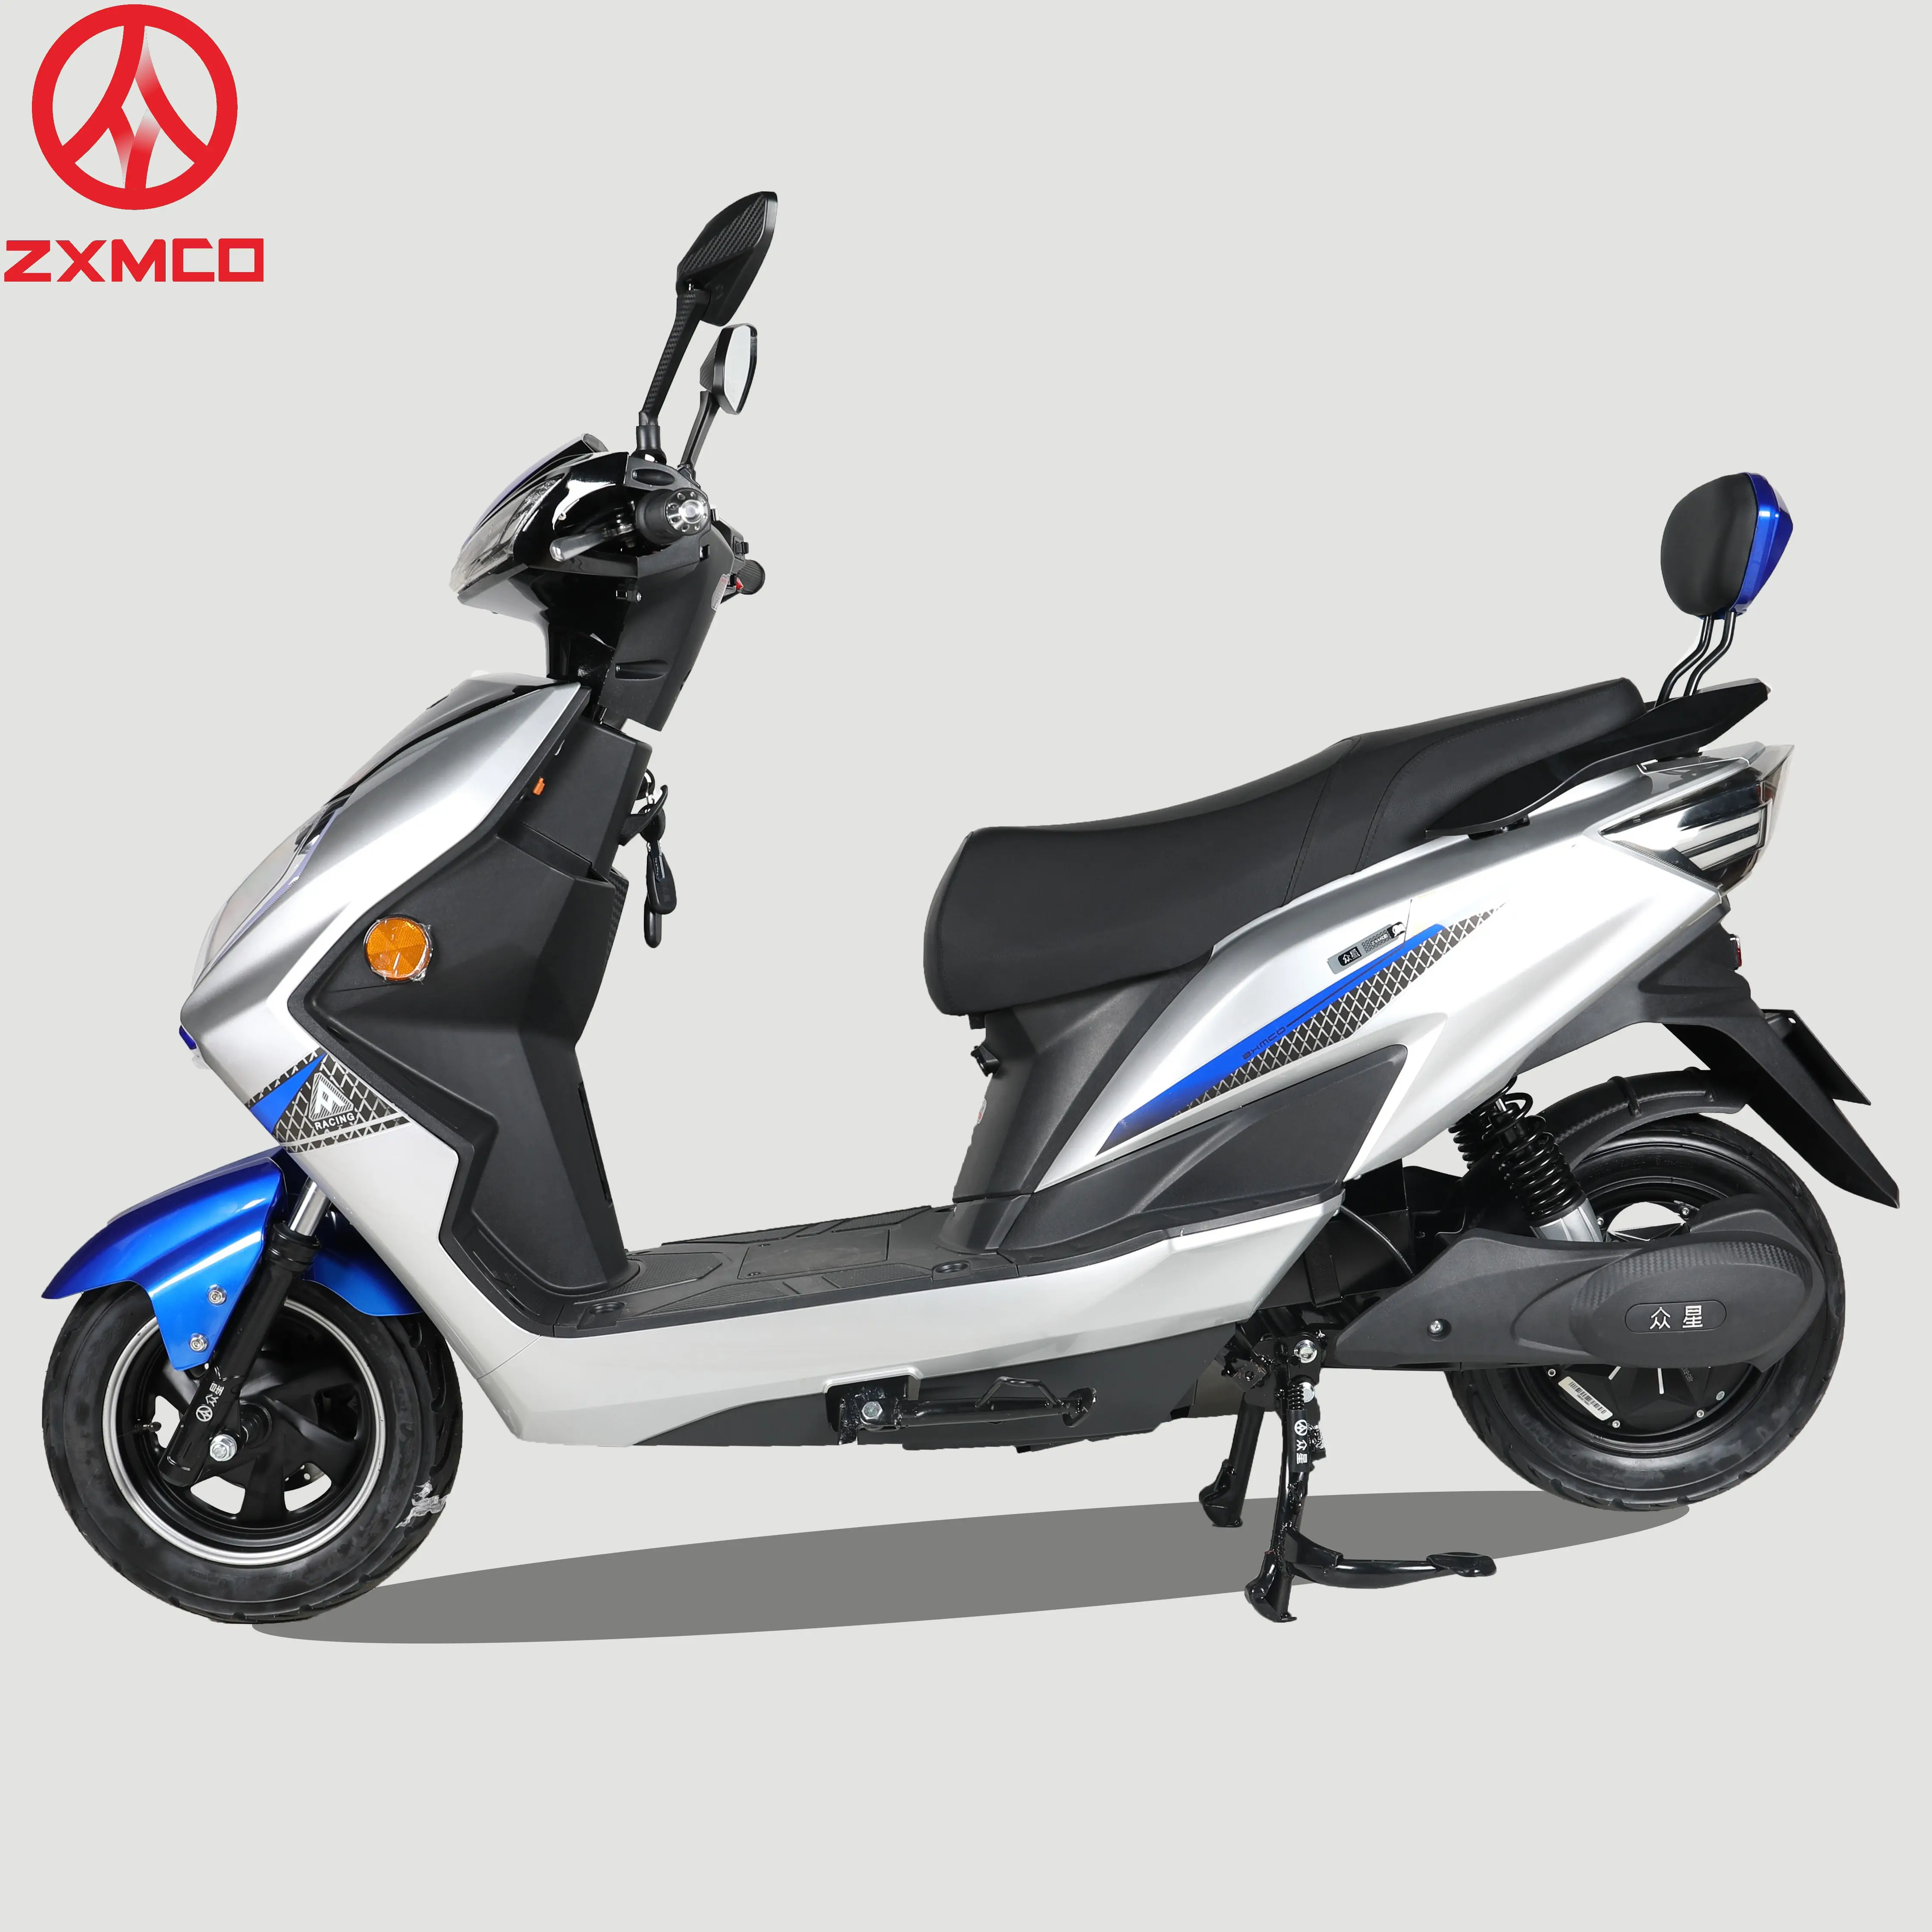 Самые продаваемые дешевые мотоциклы 2 колеса 800 Вт электрический скутер взрослый Электрический мотоцикл